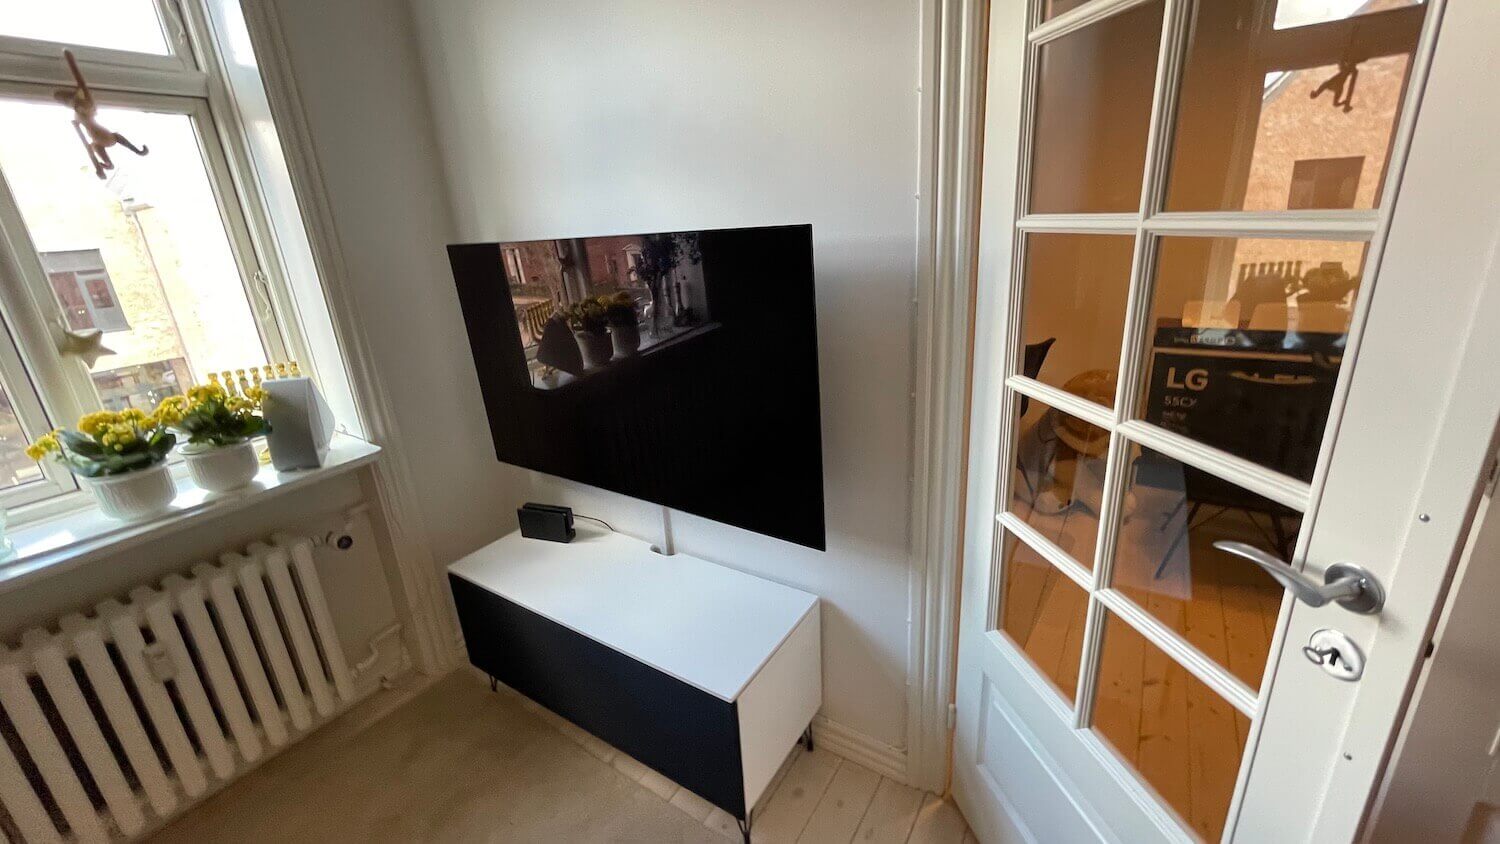 Væg-installation af LG OLED TV